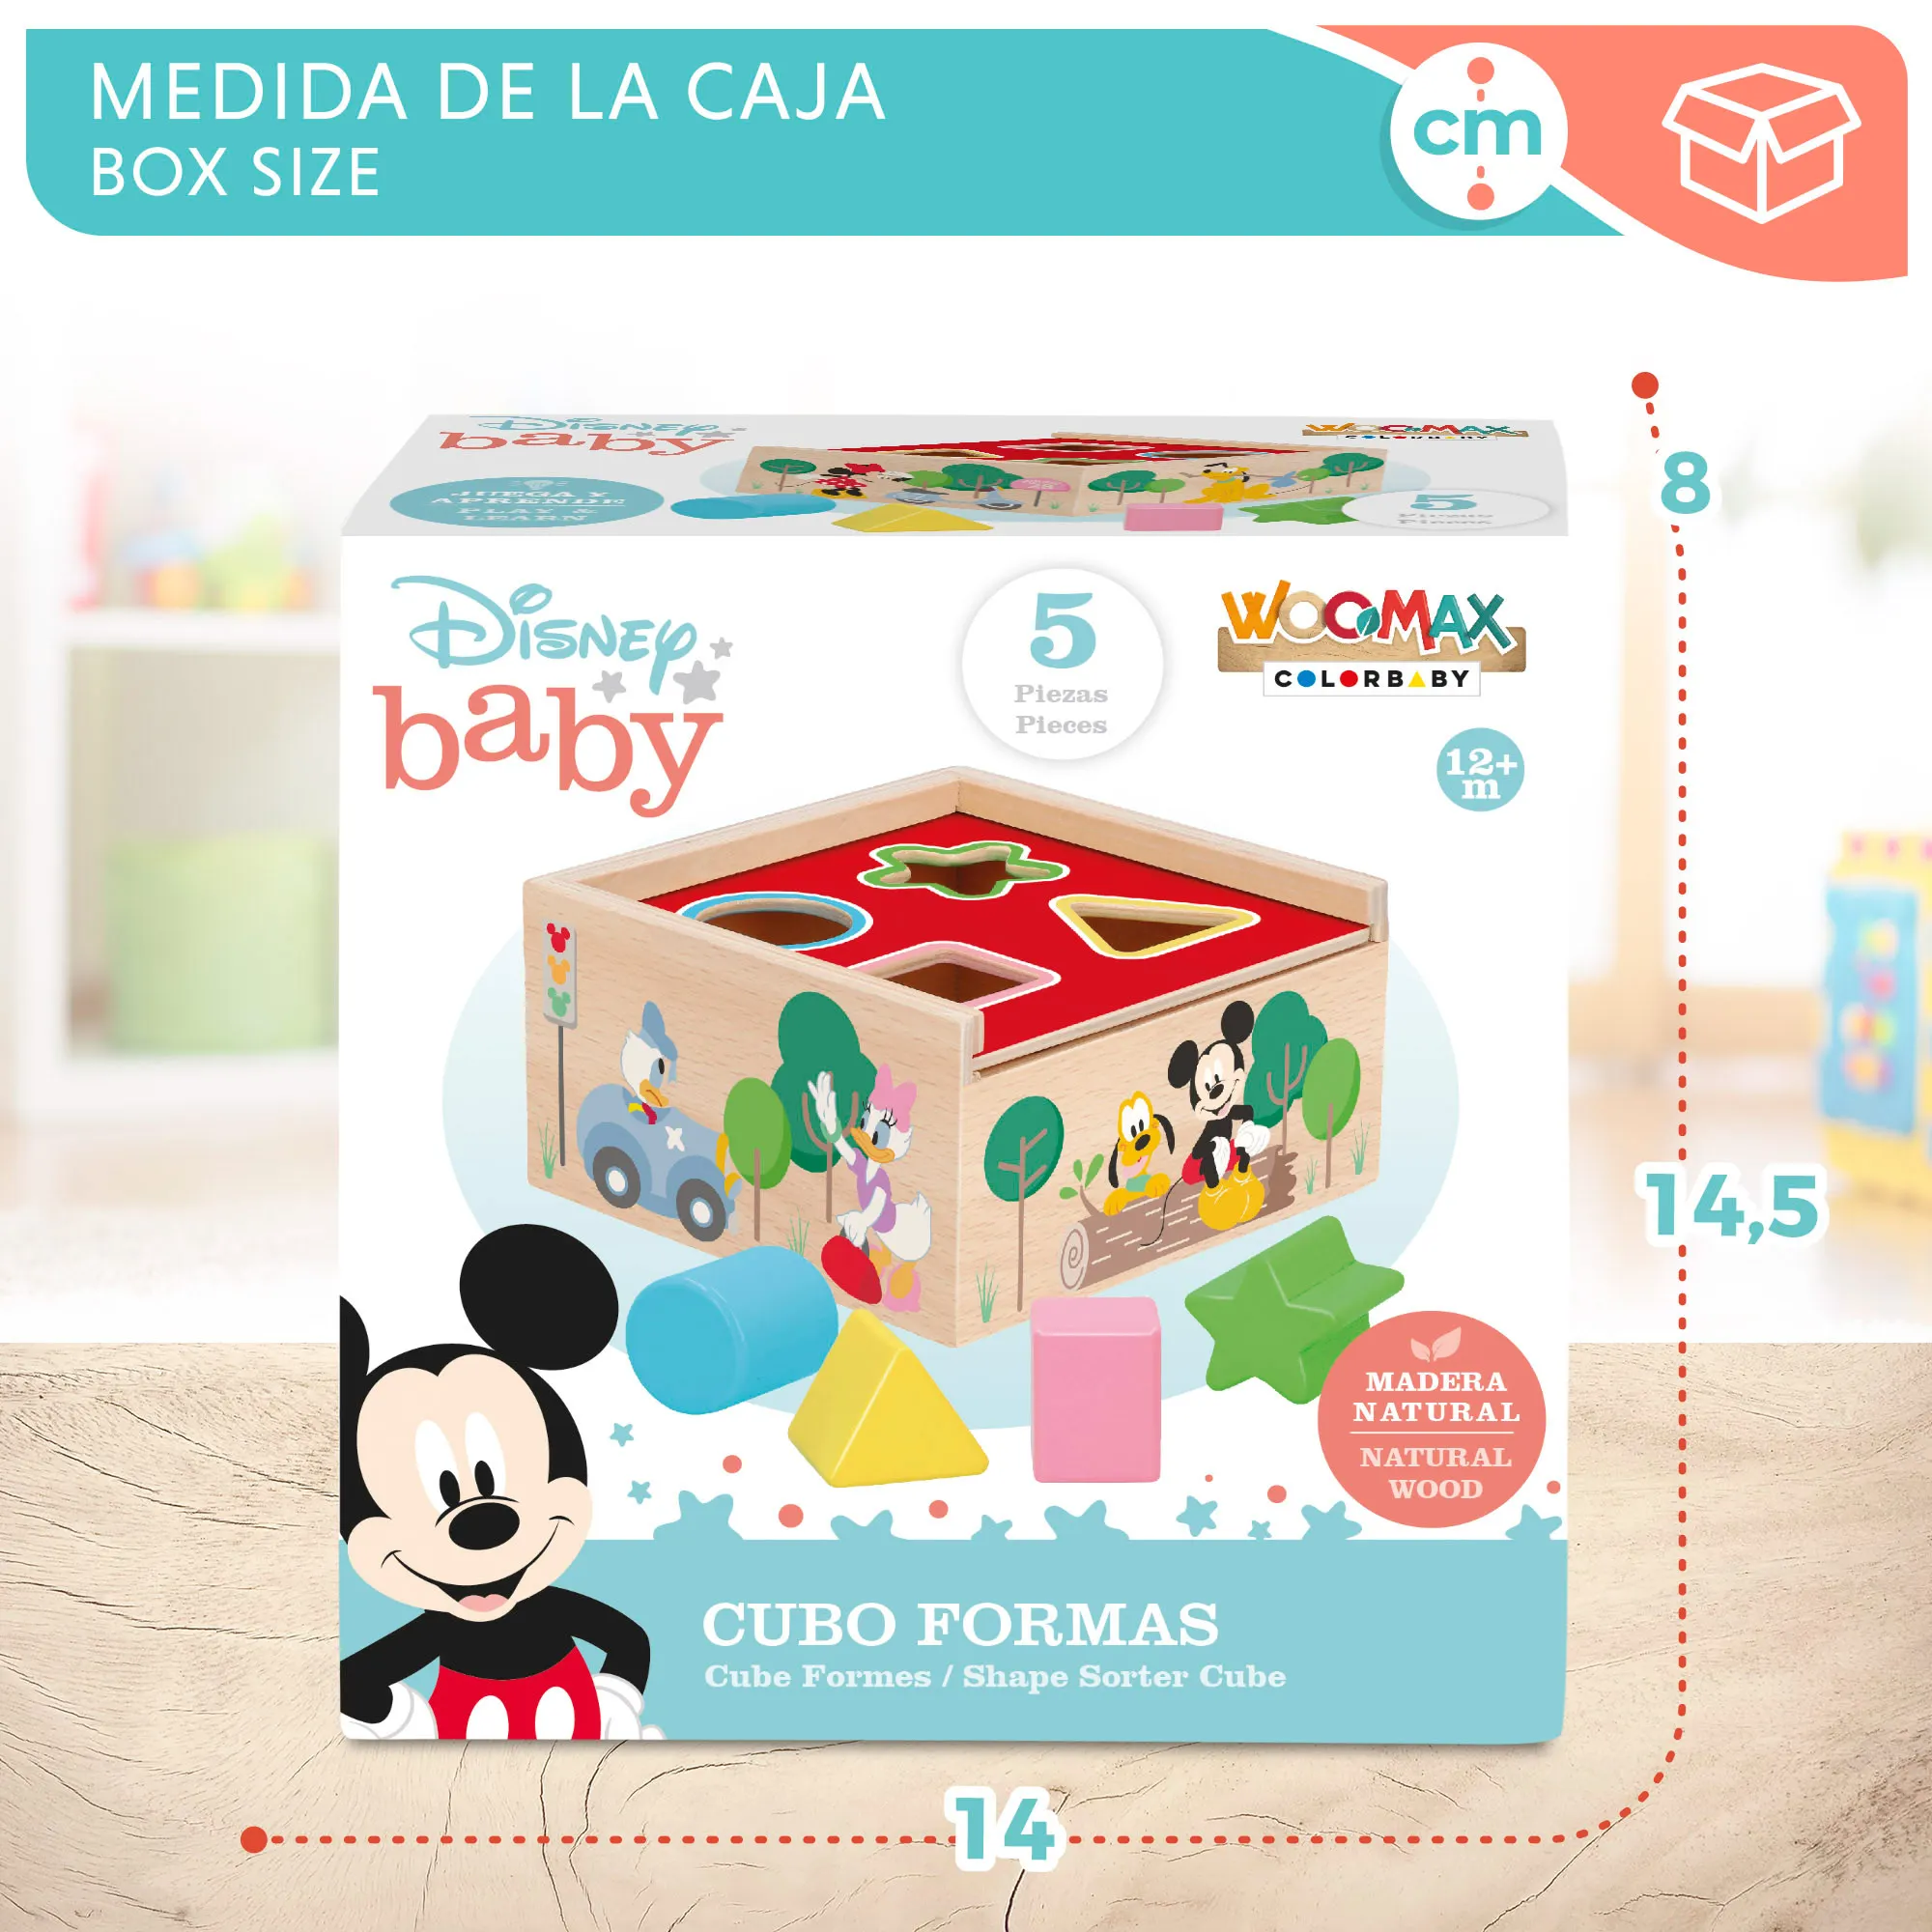 Formas y colores Cubo encajables bebé 5 Piezas Disney Juguetes para Apilar y Encajar Juguetes bebés 1 año Juego educativo Niños 1 2 años Bloques infantiles Disney